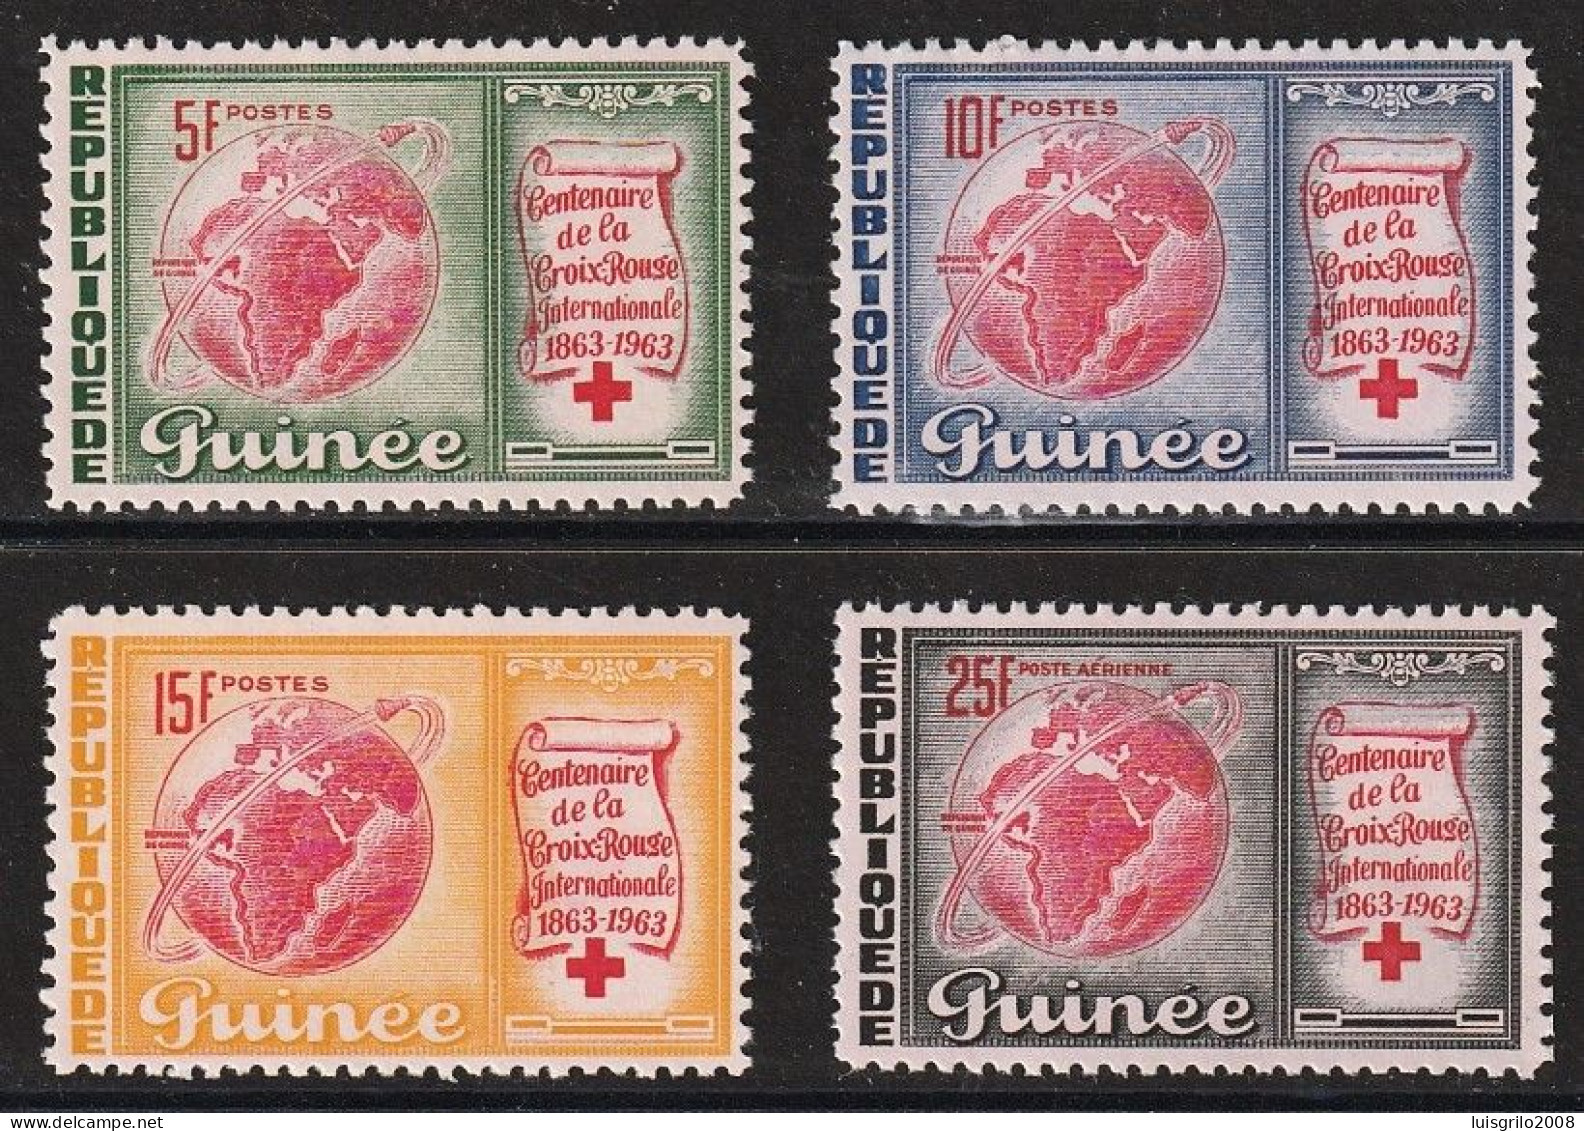 Republique De Guinee 1963 - Red Cross/ Centenaire De La Croix-Rouge -|- Série Compléte - MNH - Guinea (1958-...)